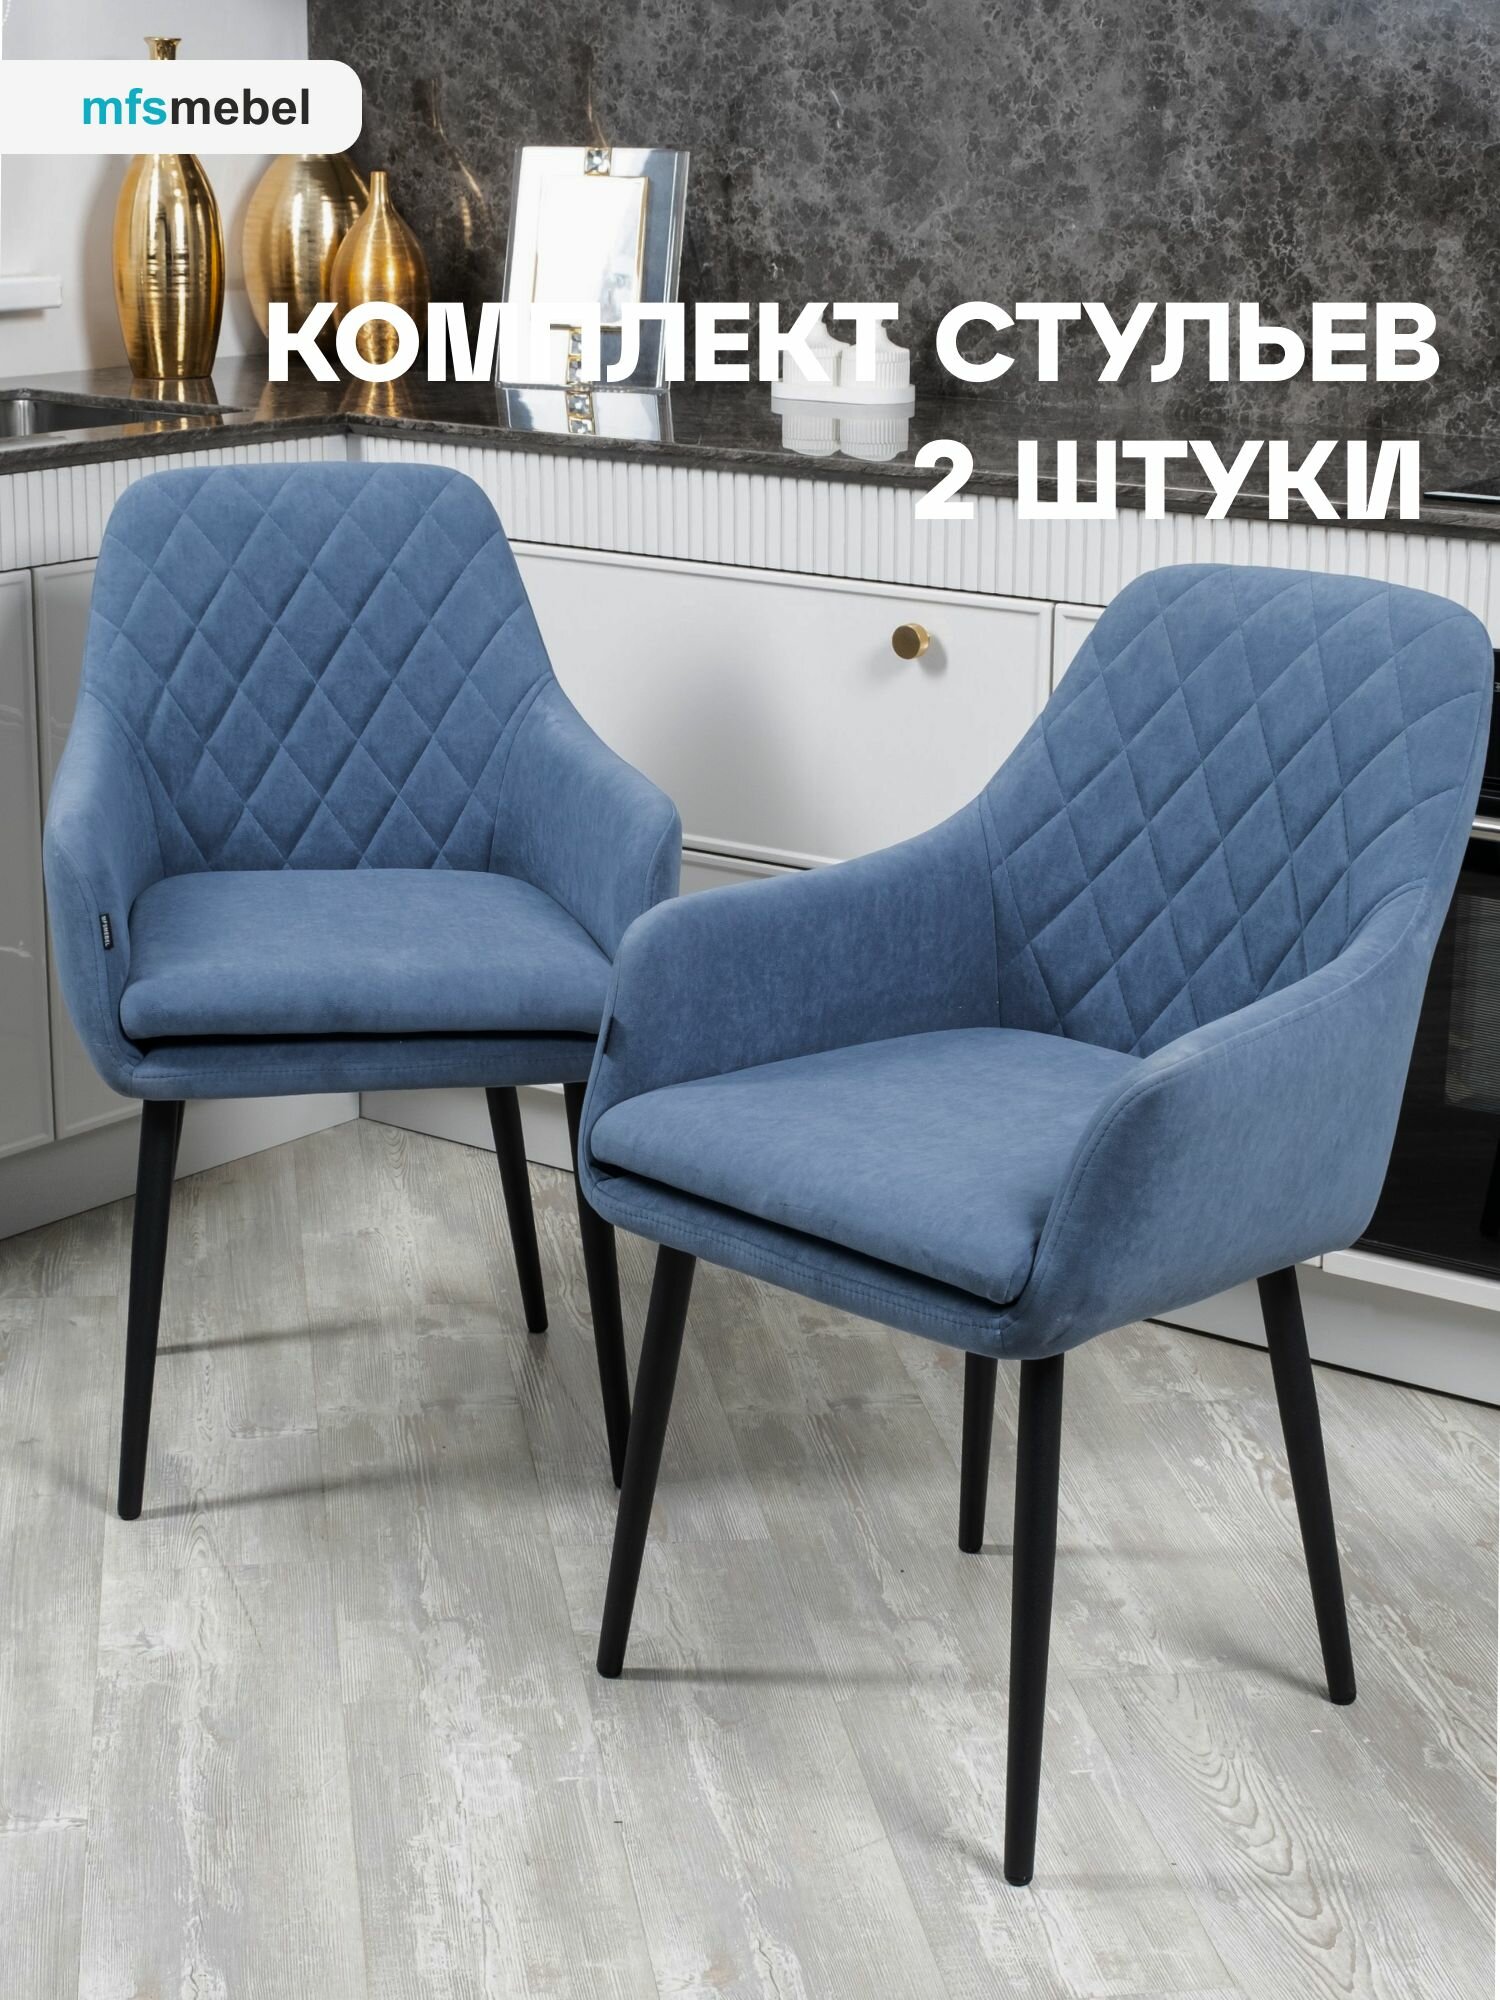 Комплект стульев Ар-Деко для кухни синий, стулья кухонные 2 штуки